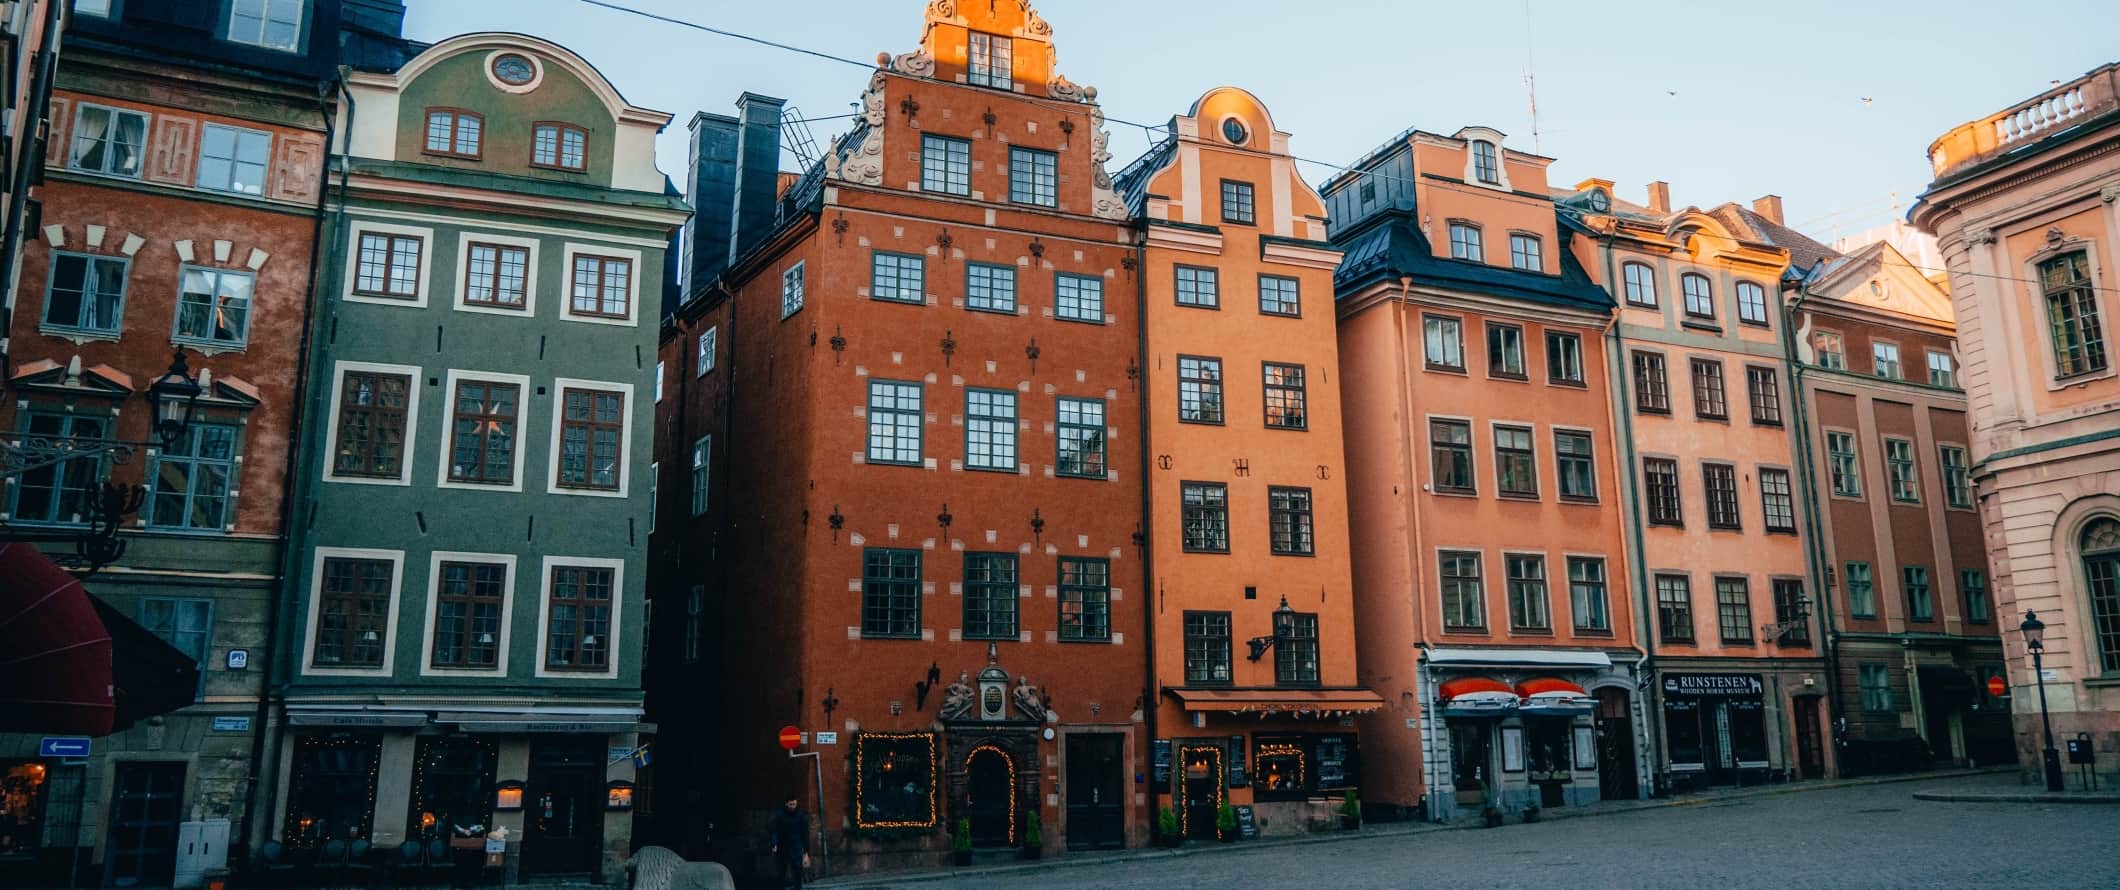 丰富多彩的历史内装的gs lining a plaza in Gamla Stan, the old town of Stockholm, Sweden